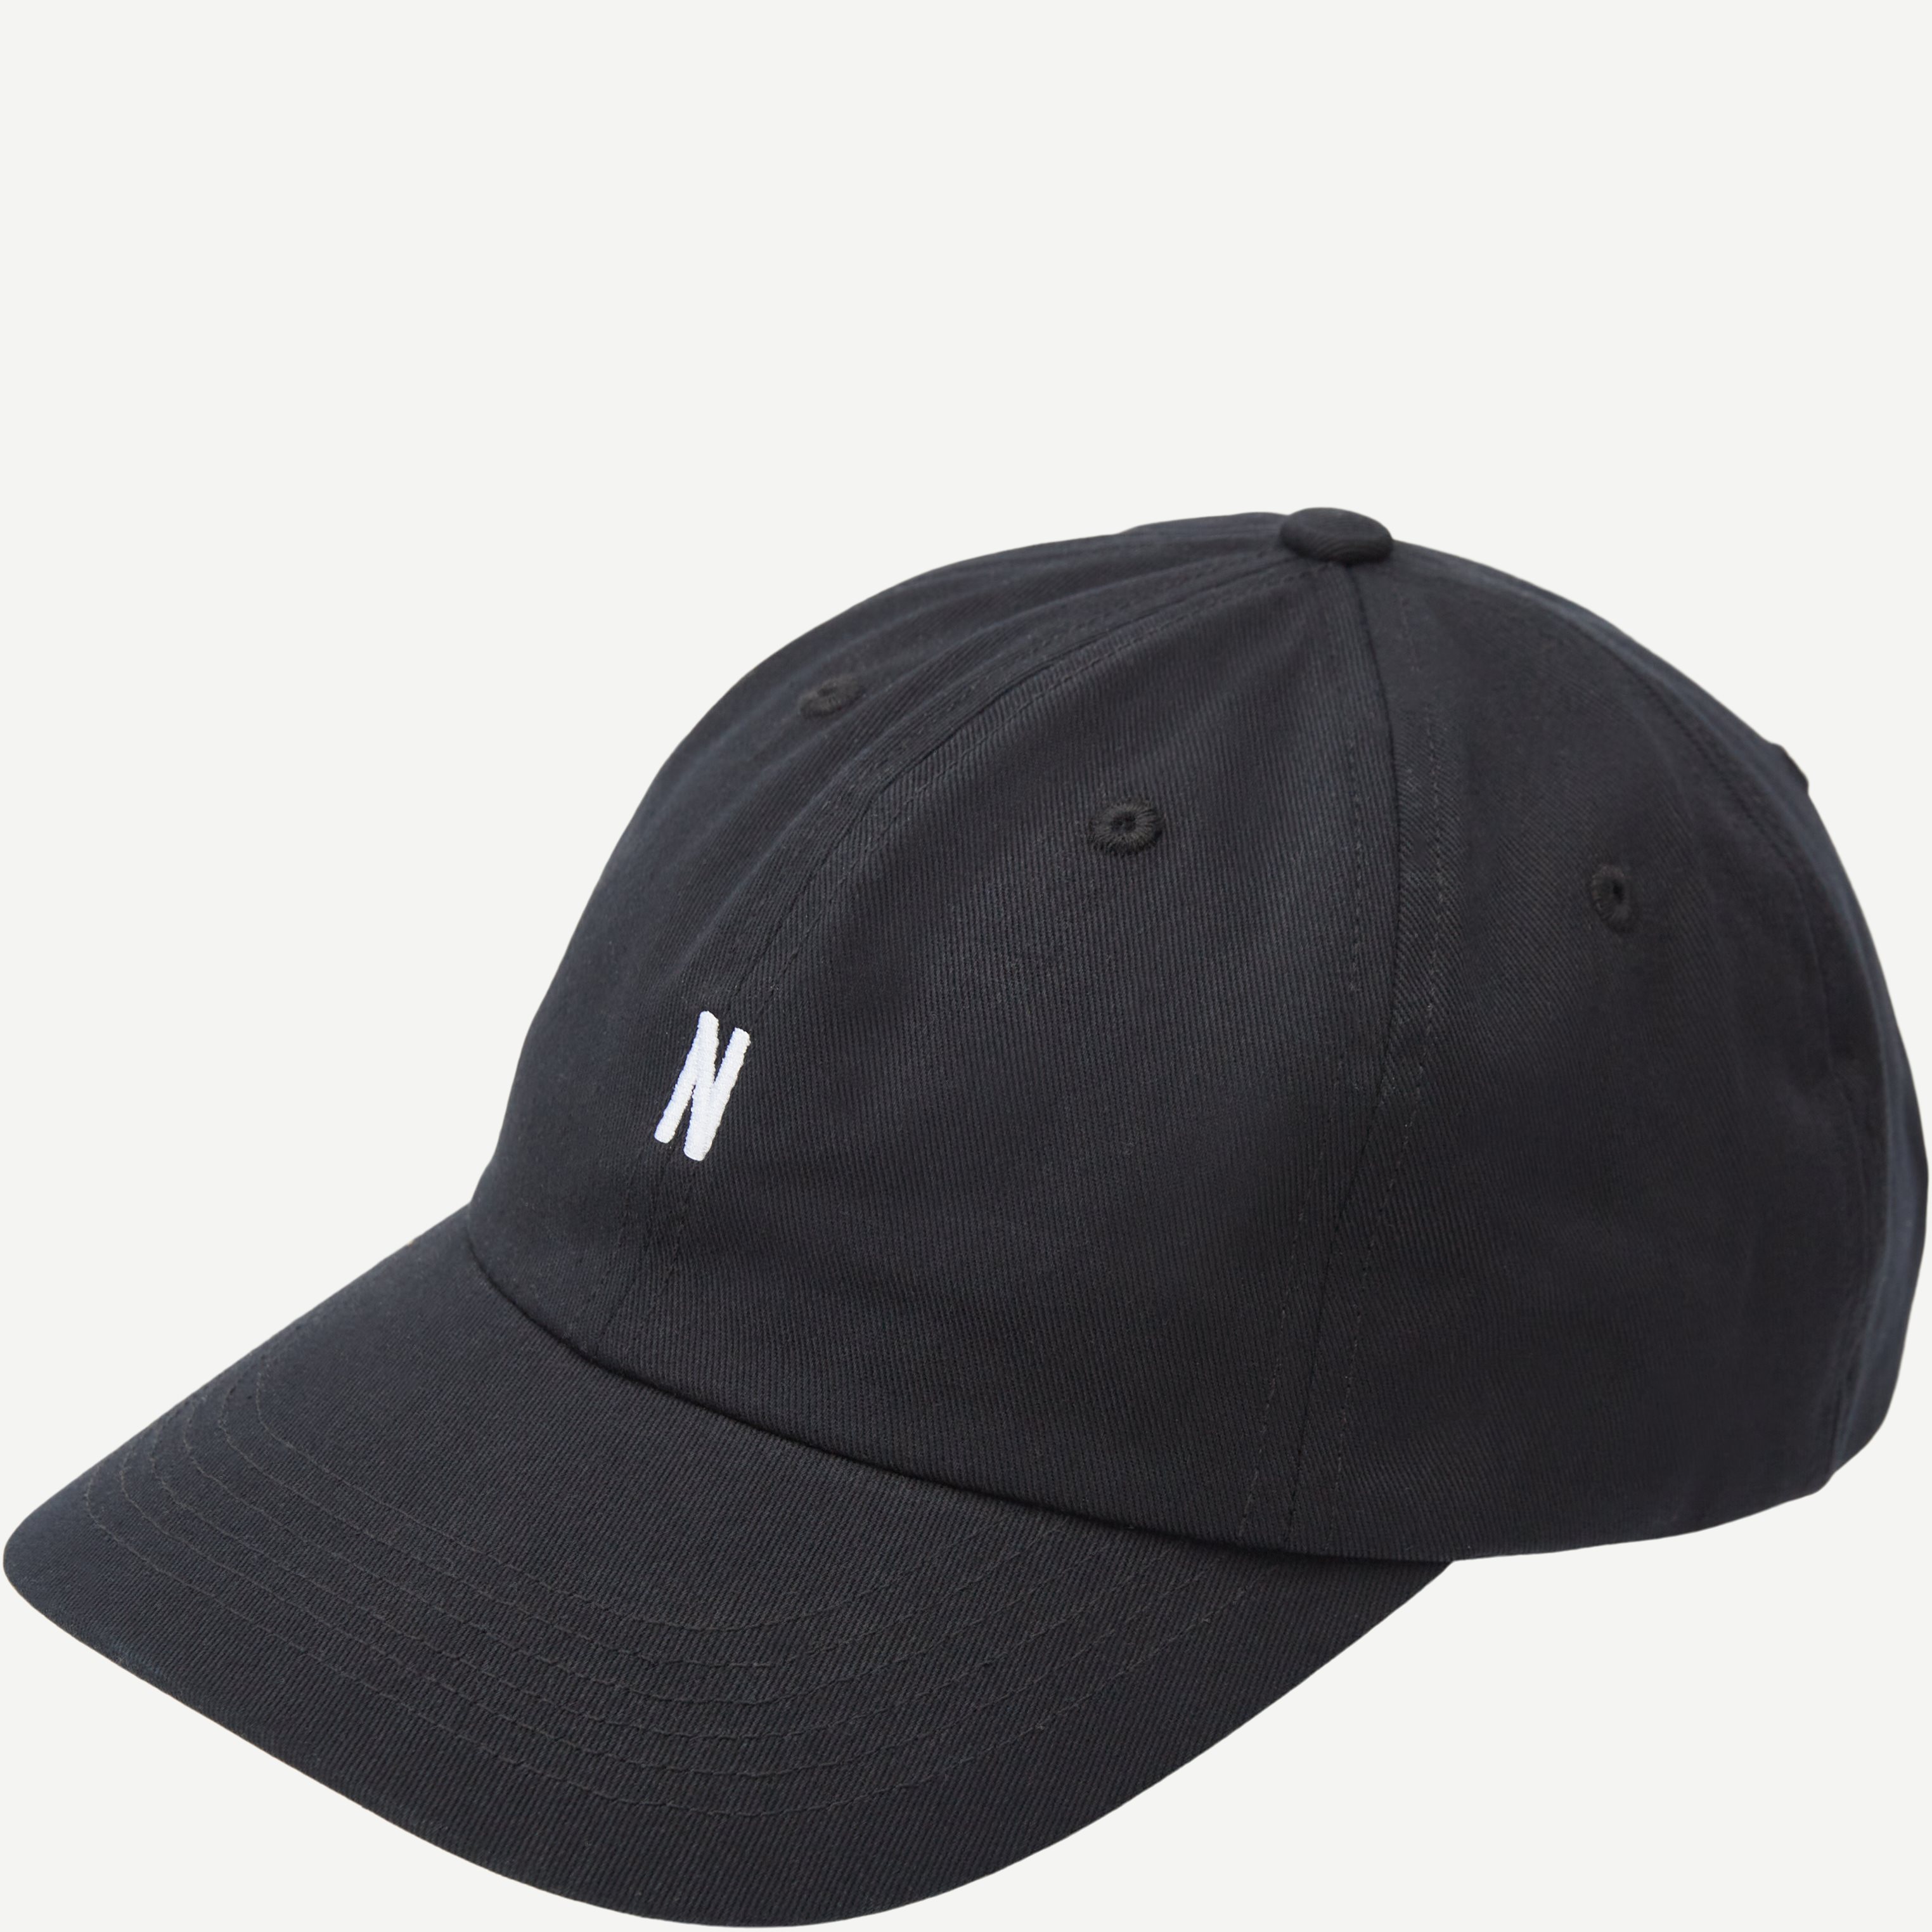 Twill sports cap - Caps - Regular fit - Sort